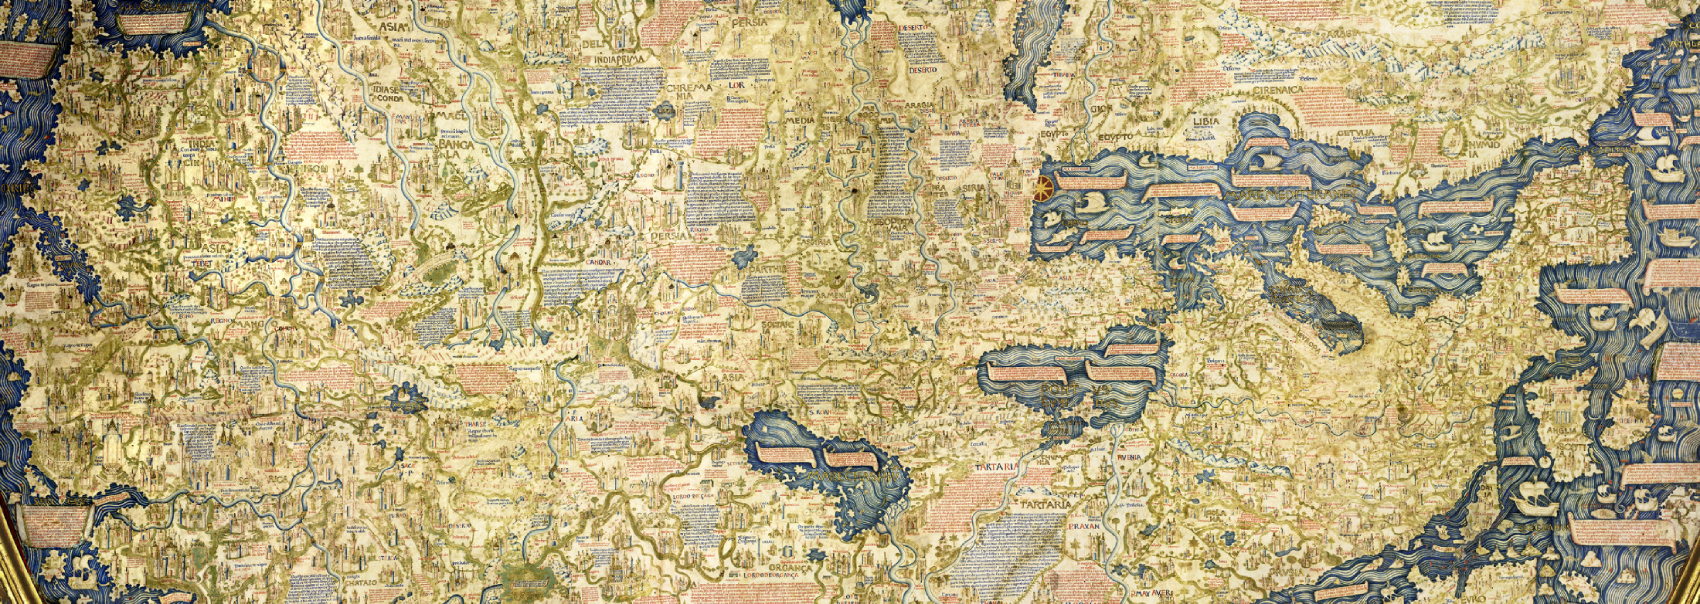 Ein Ausschnitt einer mittelalterlichen Weltkarte zeigt Europa